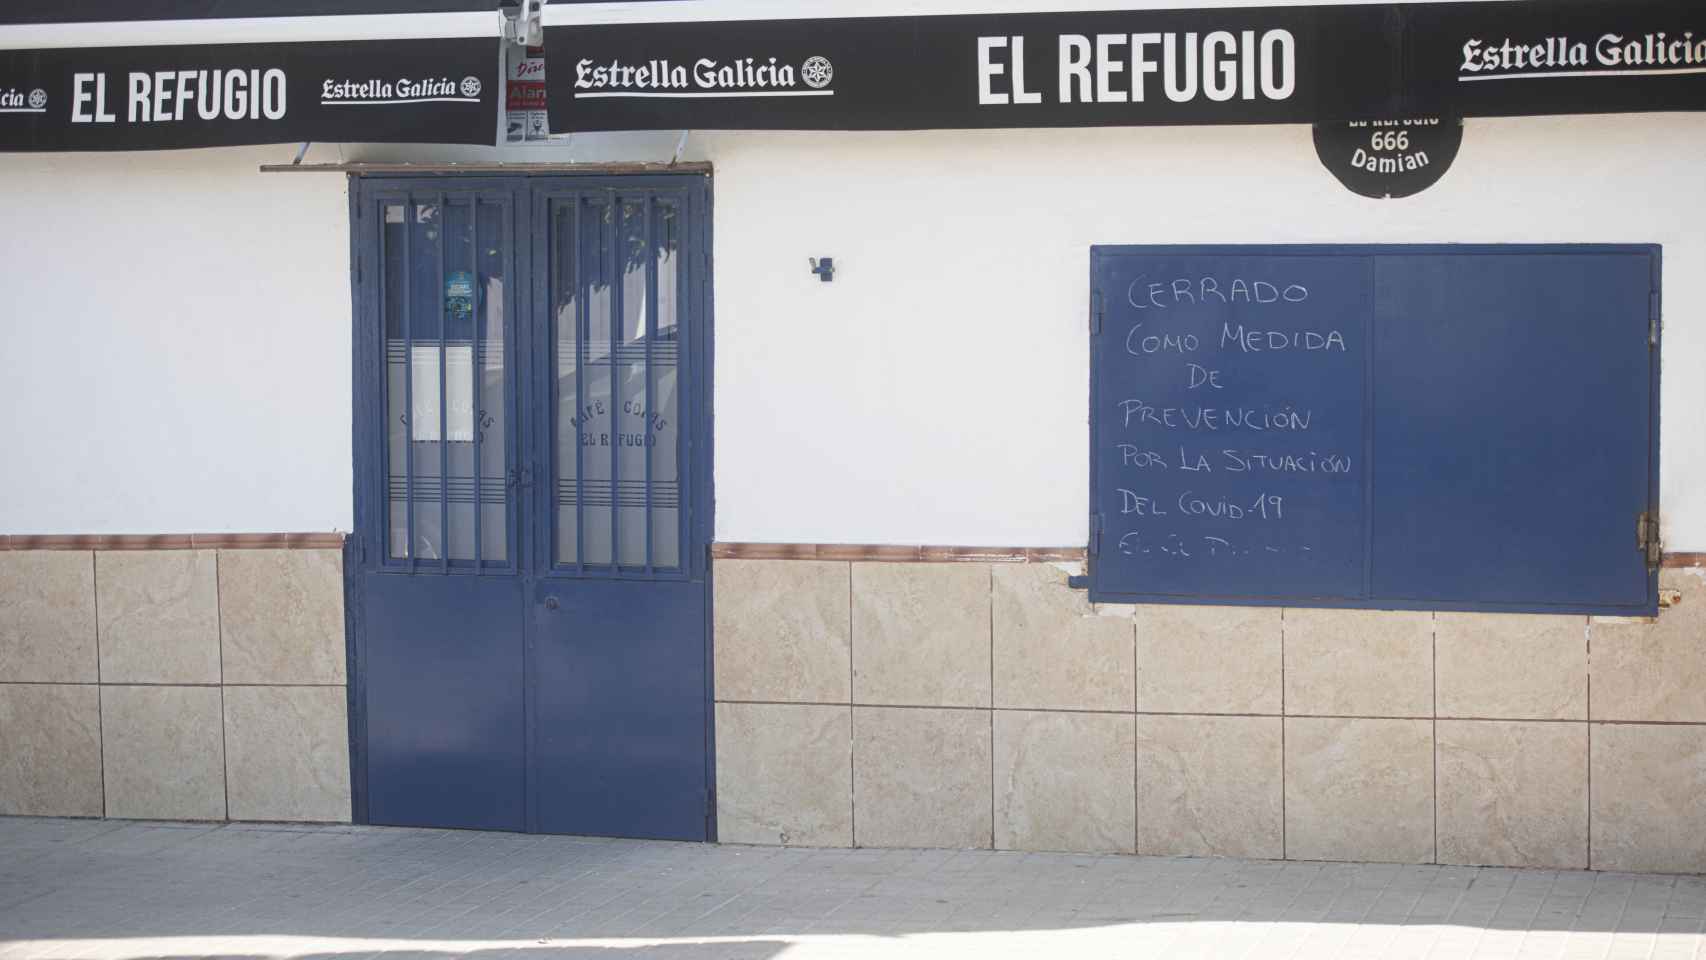 La mayoría de bares y restaurantes del pueblo, como el de la imagen, se encuentran cerrados desde hace dos semanas.